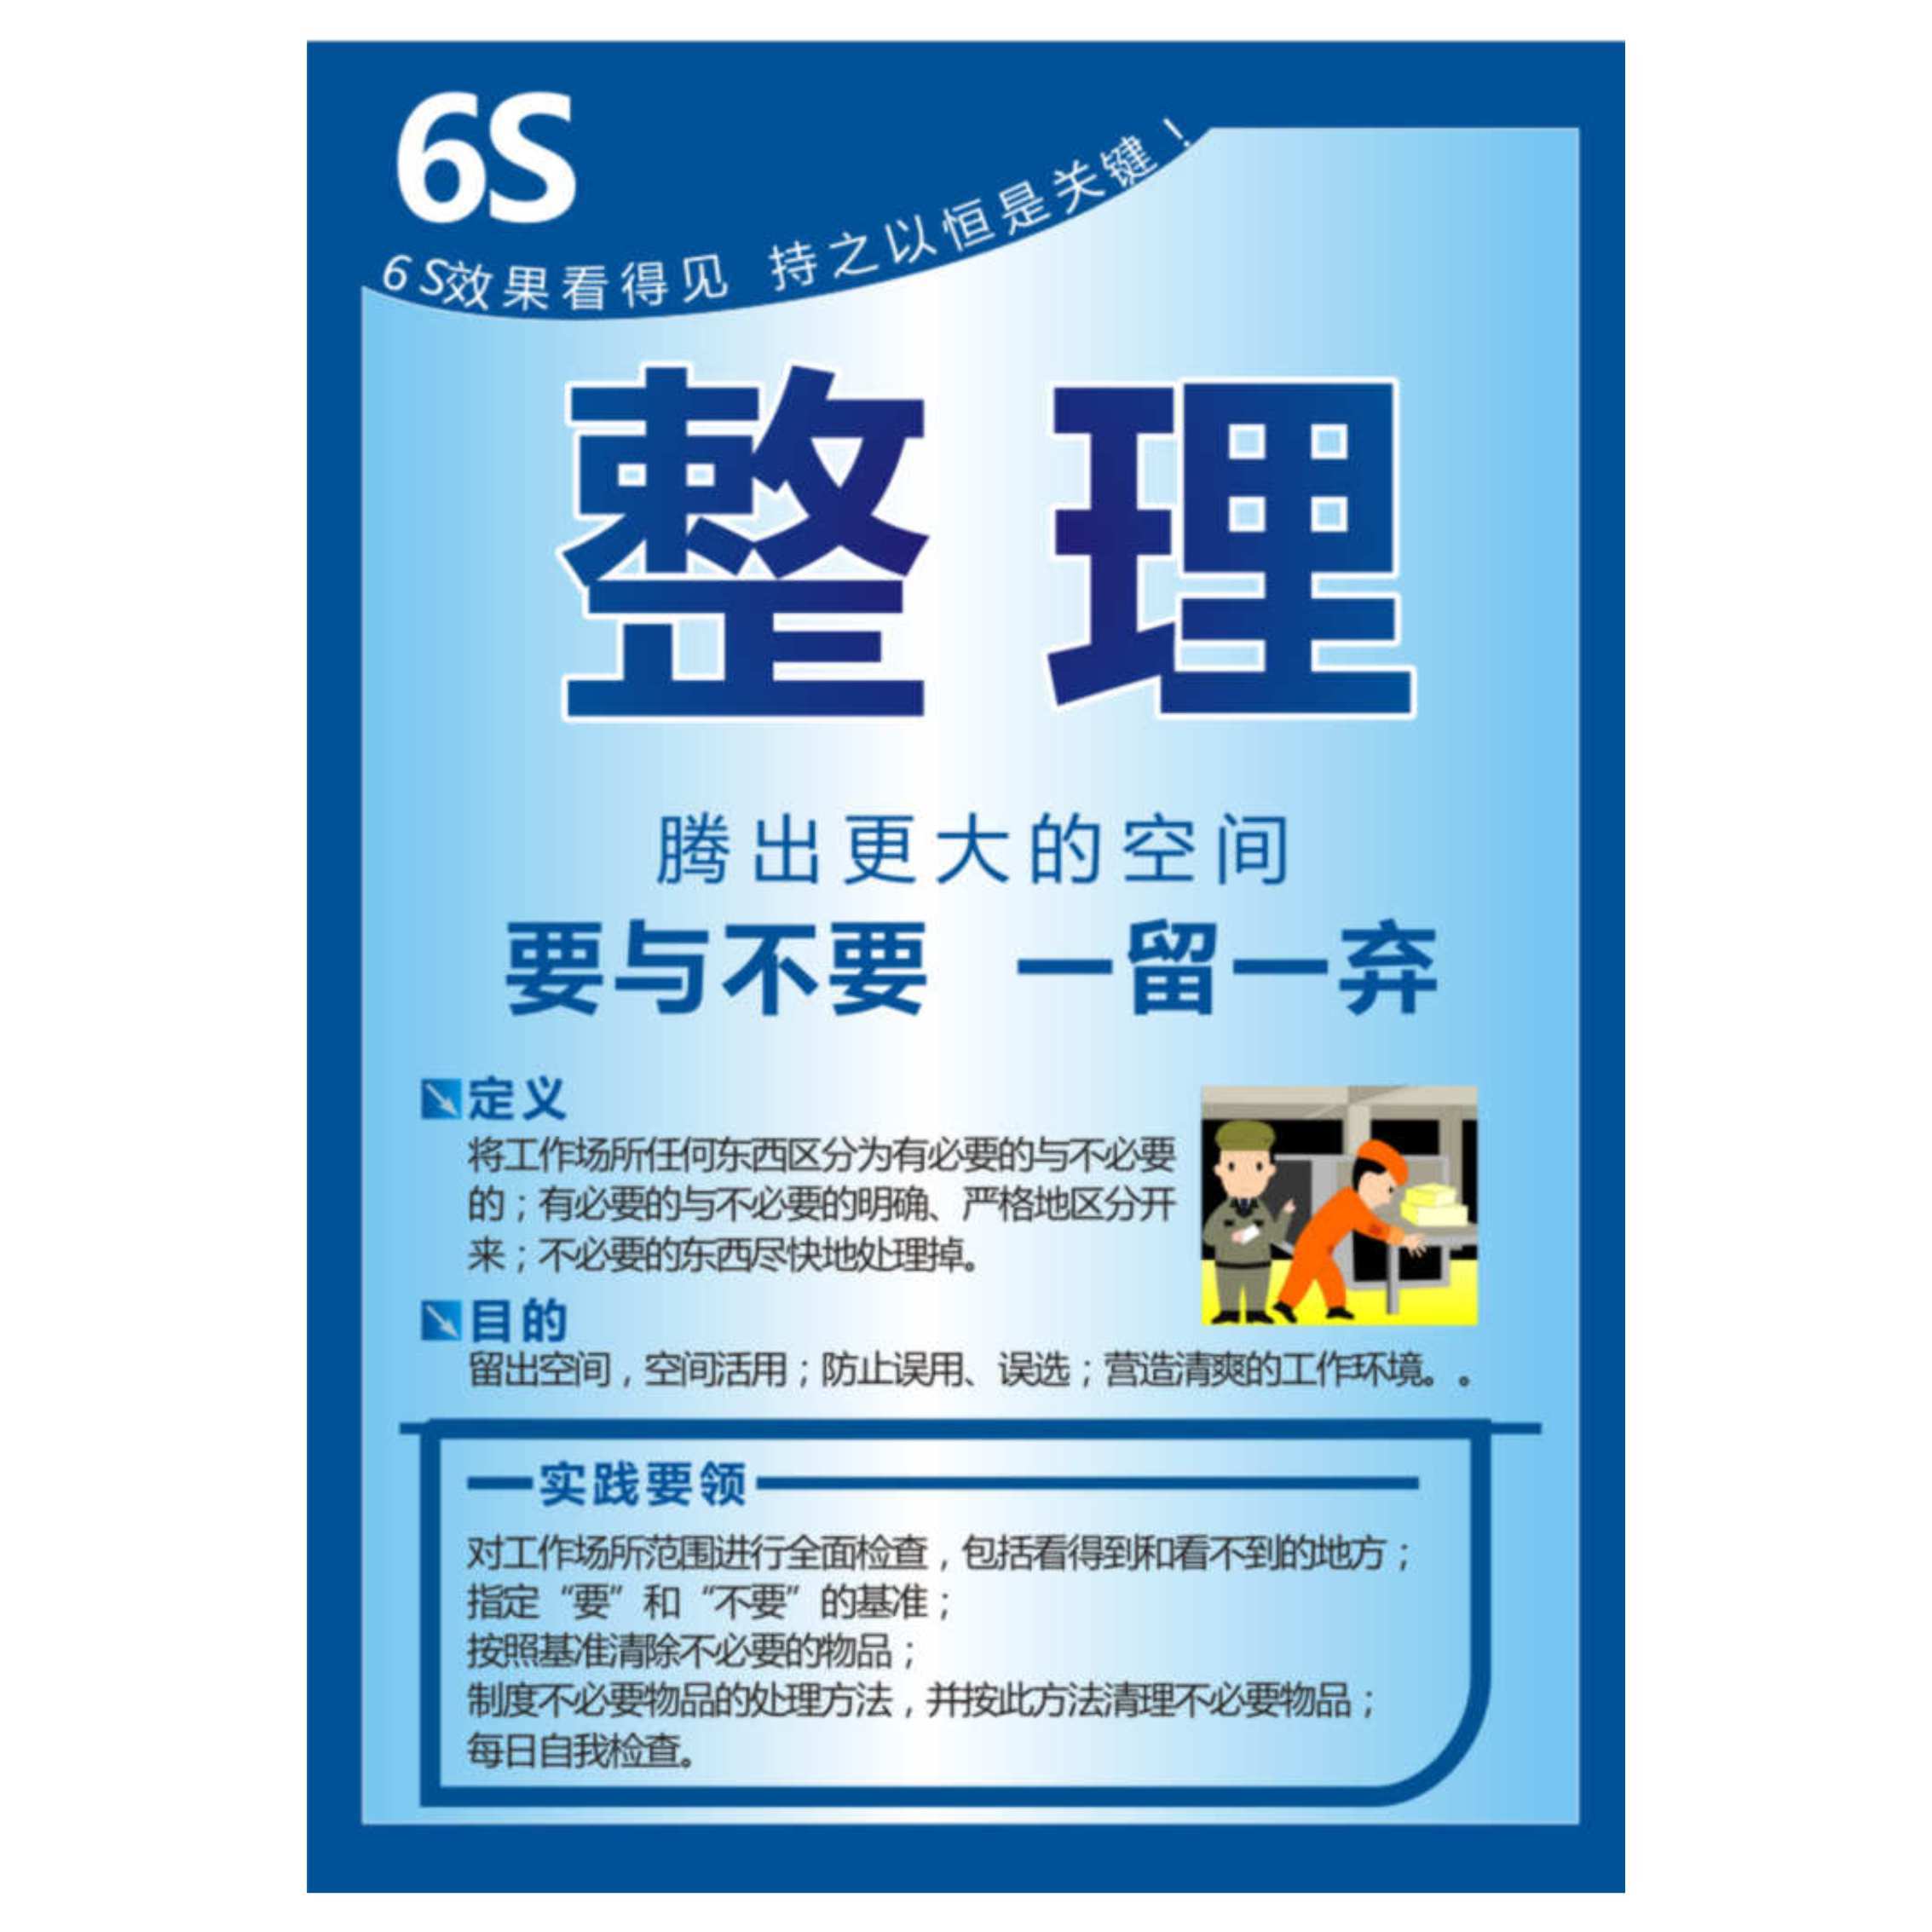 6s管理整理整顿企业文化标语质量管理宣传工厂品质管控挂贴画海报